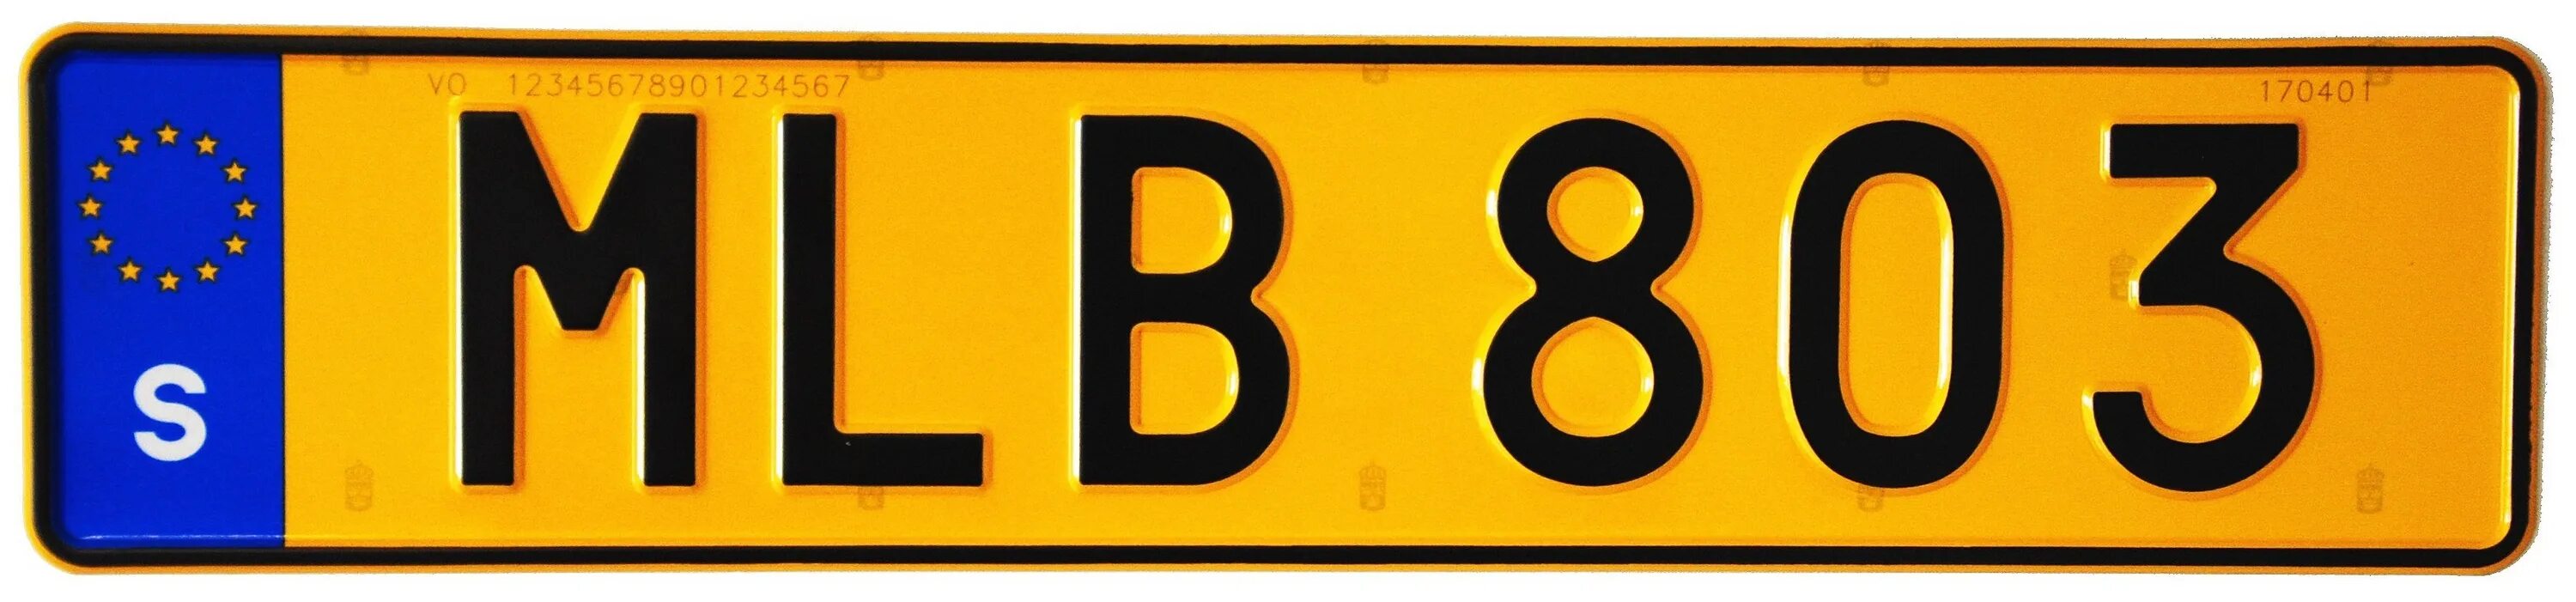 Автомобильные номера Швеции. Шведские номерные знаки. Гос номера Швеции. Транзитные номера на авто. Включи номер м